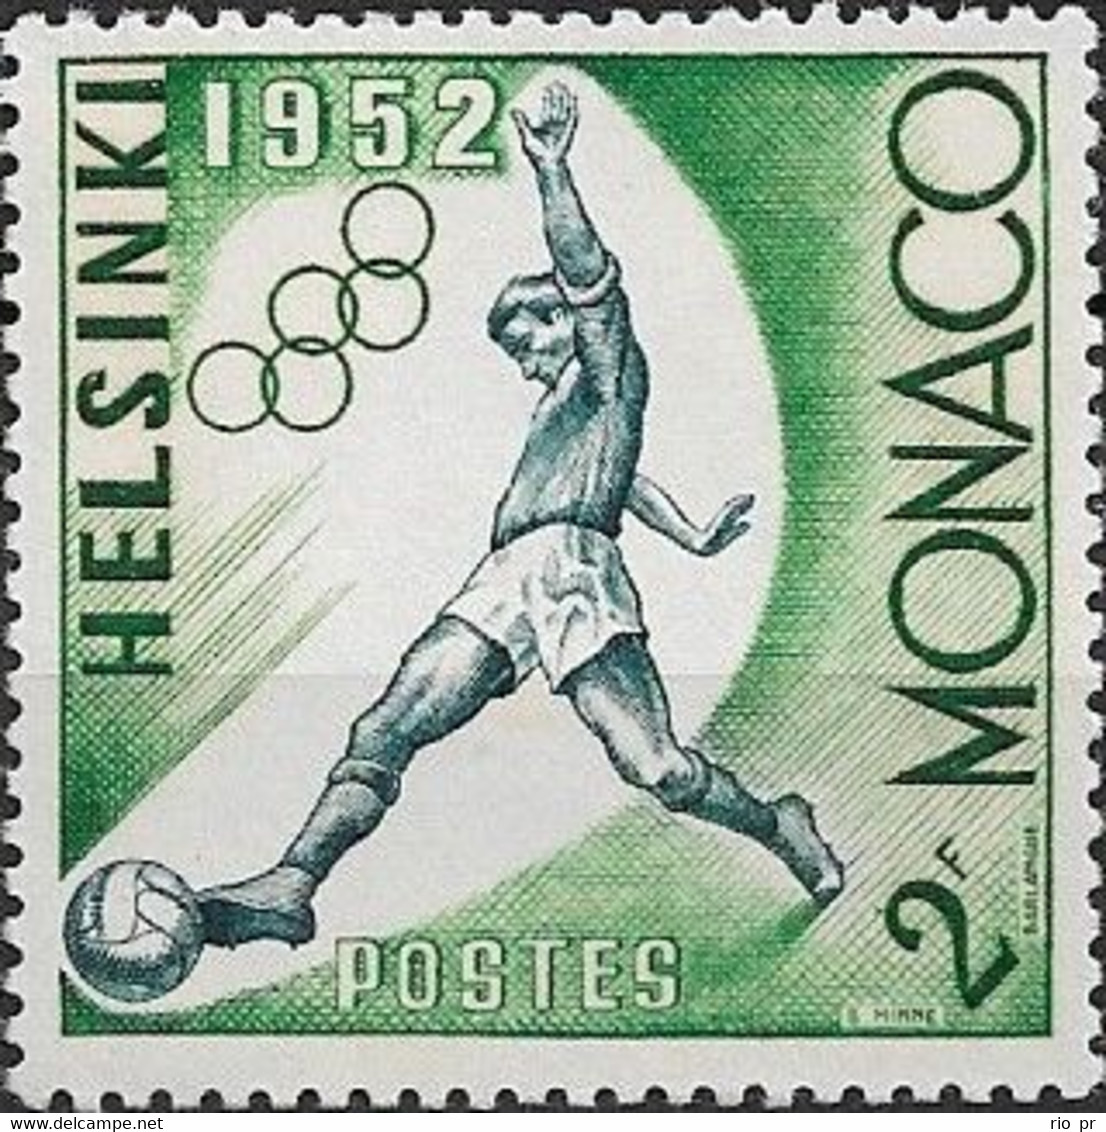 MONACO - HELSINKI'52 SUMMER OLYMPIC GAMES (SOCCER, 2 Fr) 1953 - MNH - Sommer 1952: Helsinki